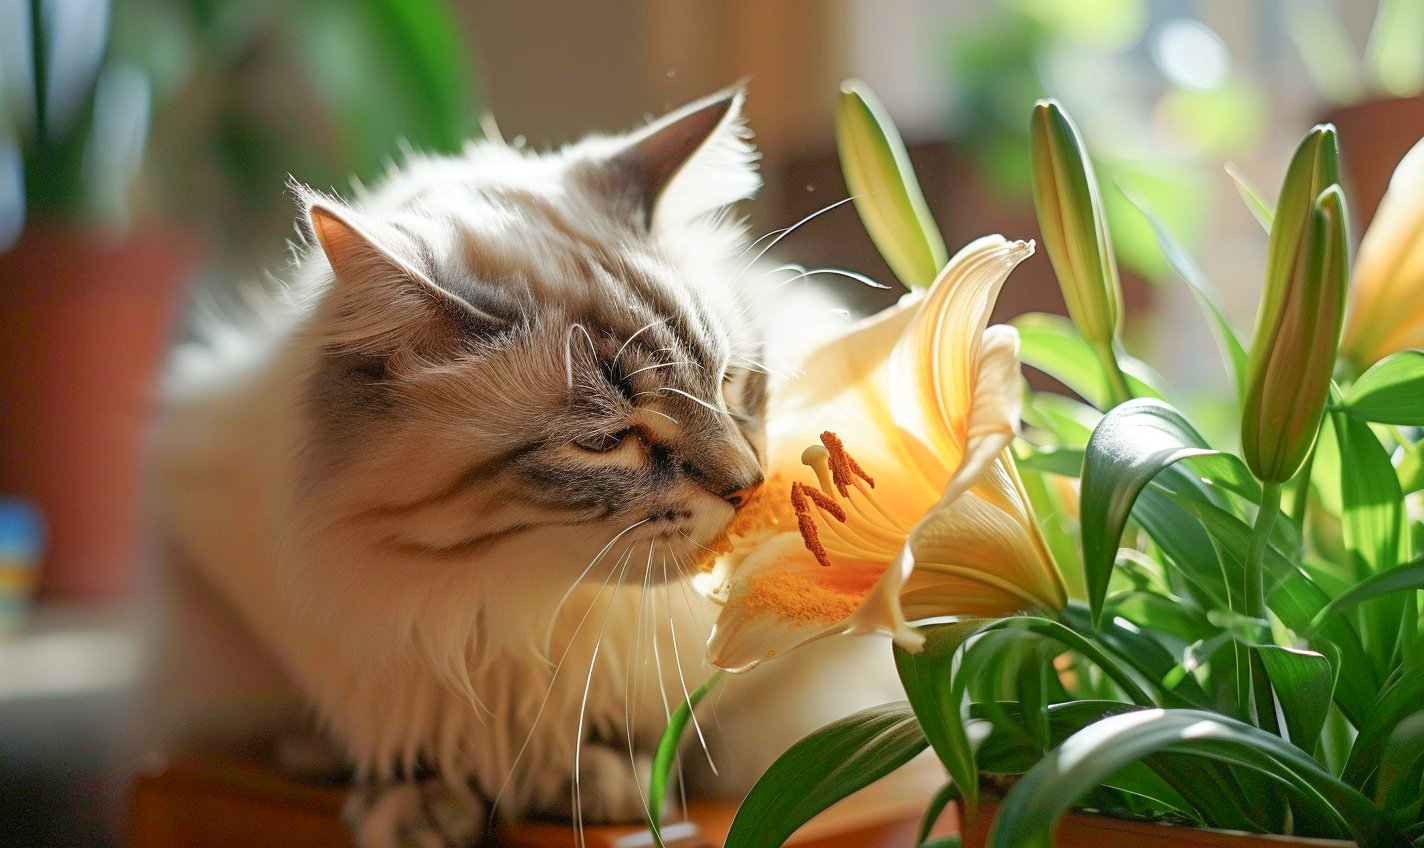 Cat eating poisonous plant 